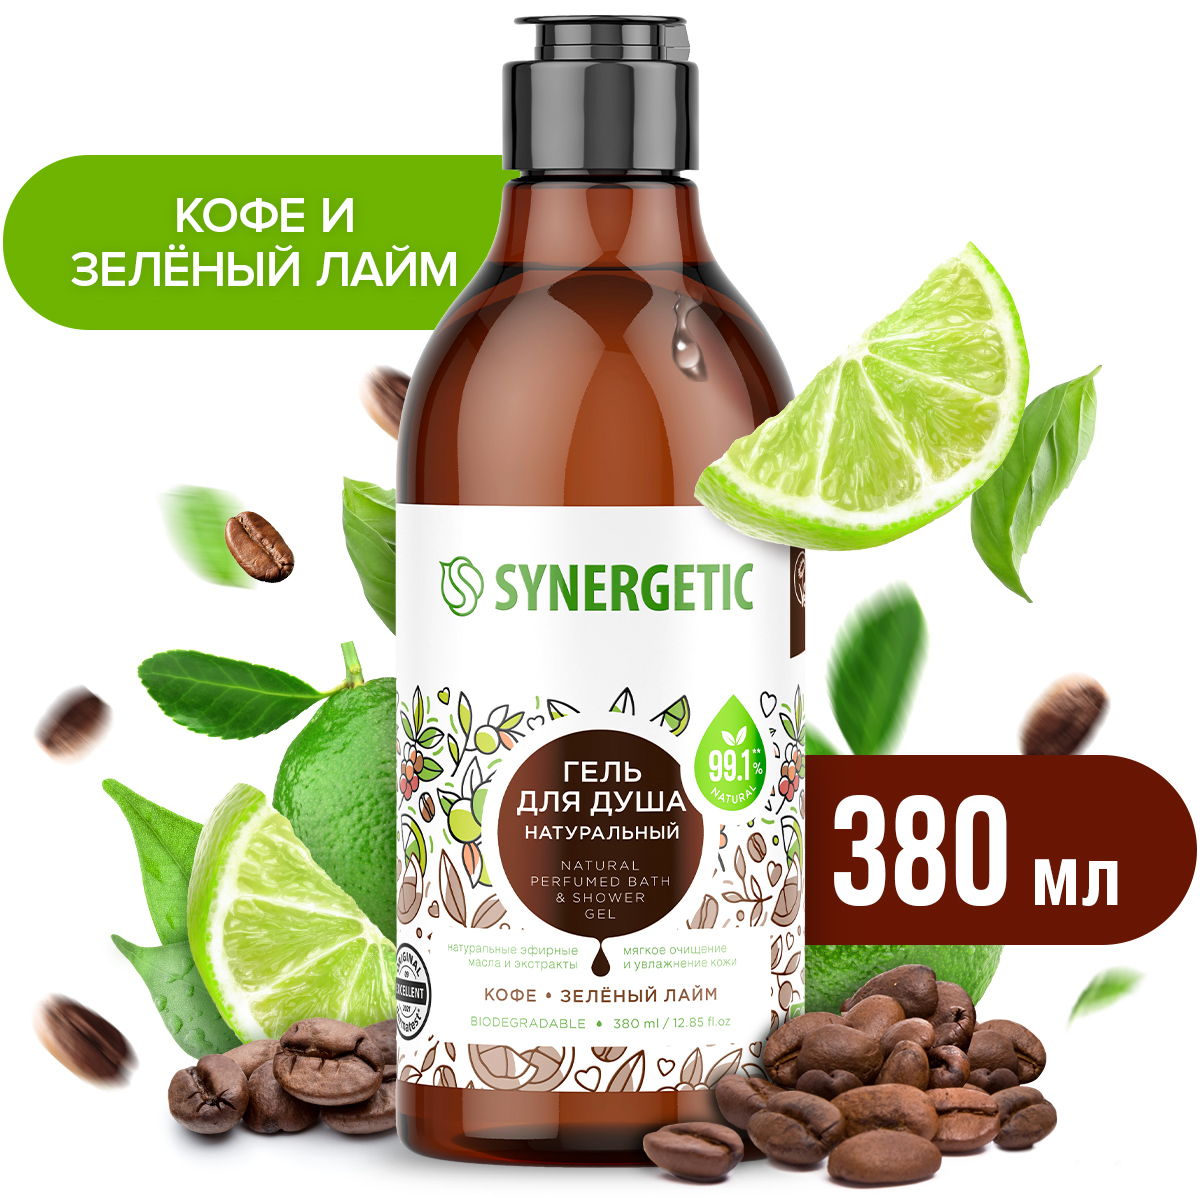 Гель для душа Synergetic натуральный, гипоаллергенный, Кофе и зеленый лайм 380 мл synergetic натуральный шампунь максимальное питание и восстановление 400